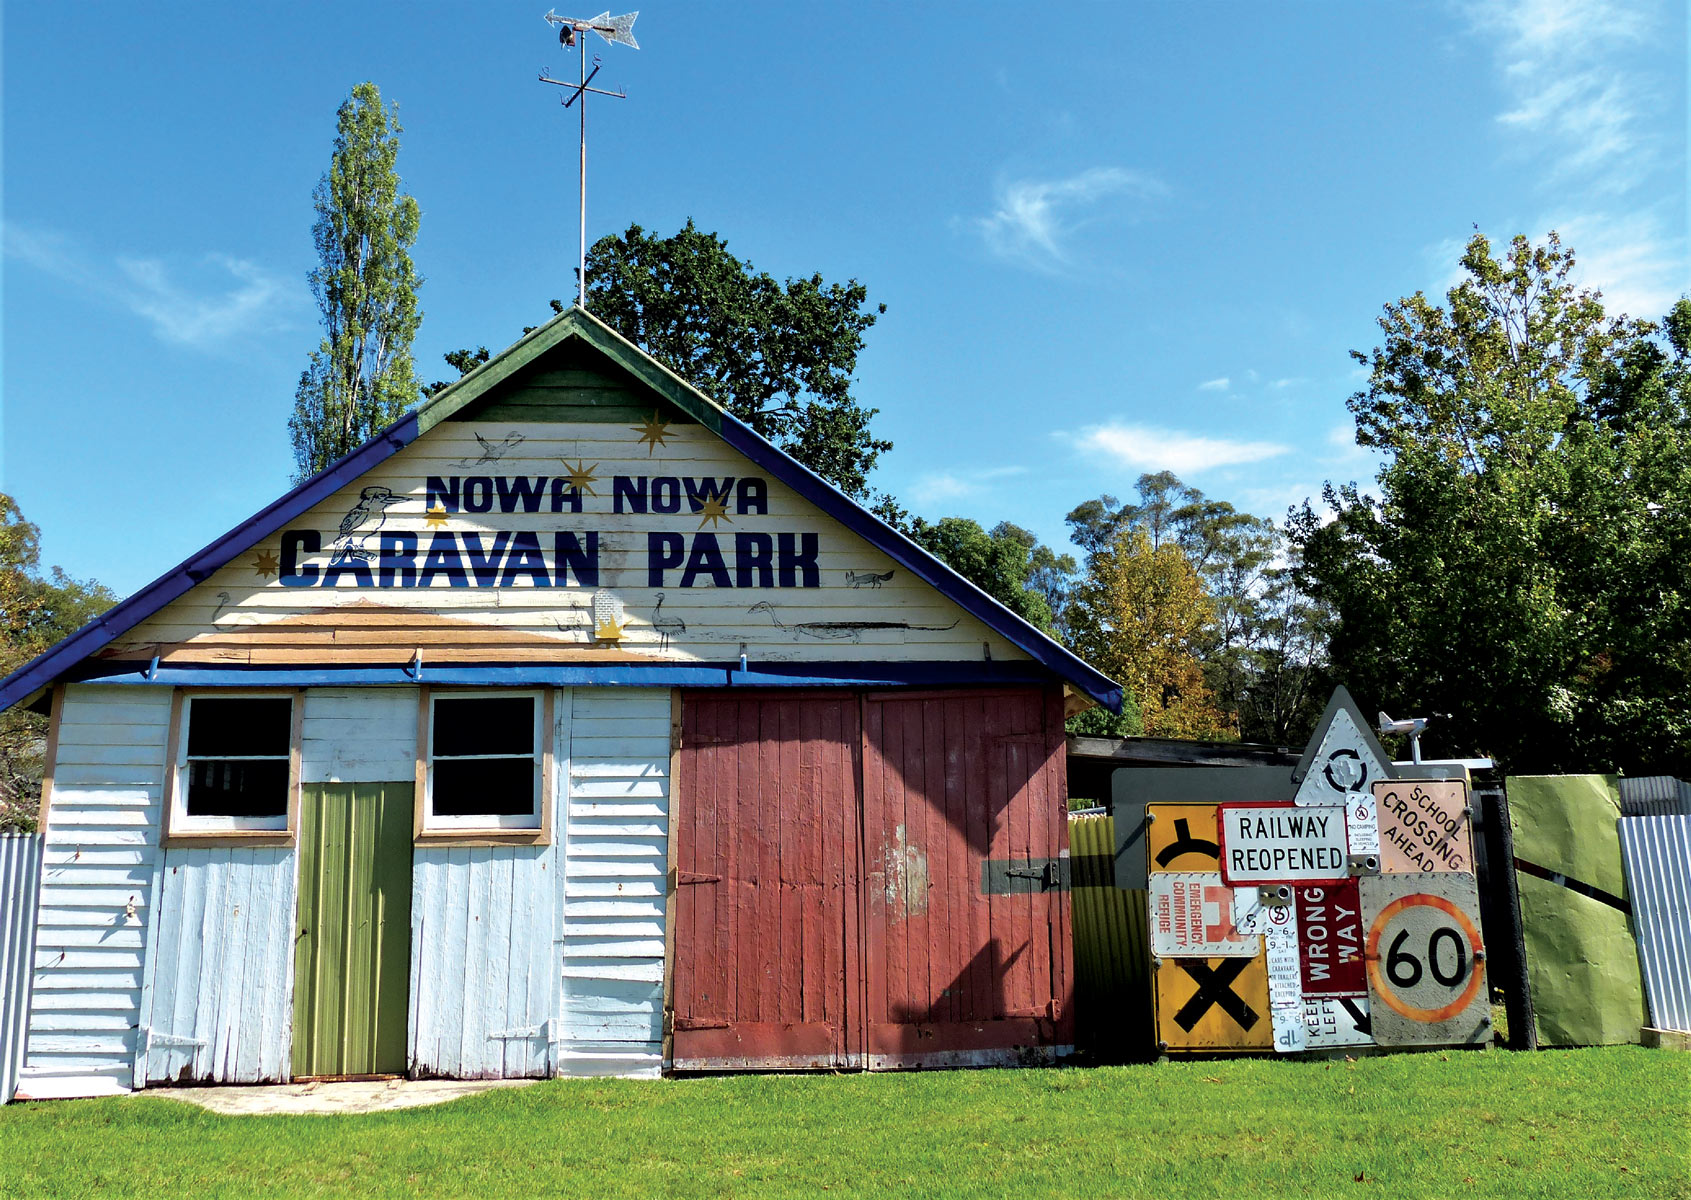 Nowa Nowa caravan park 